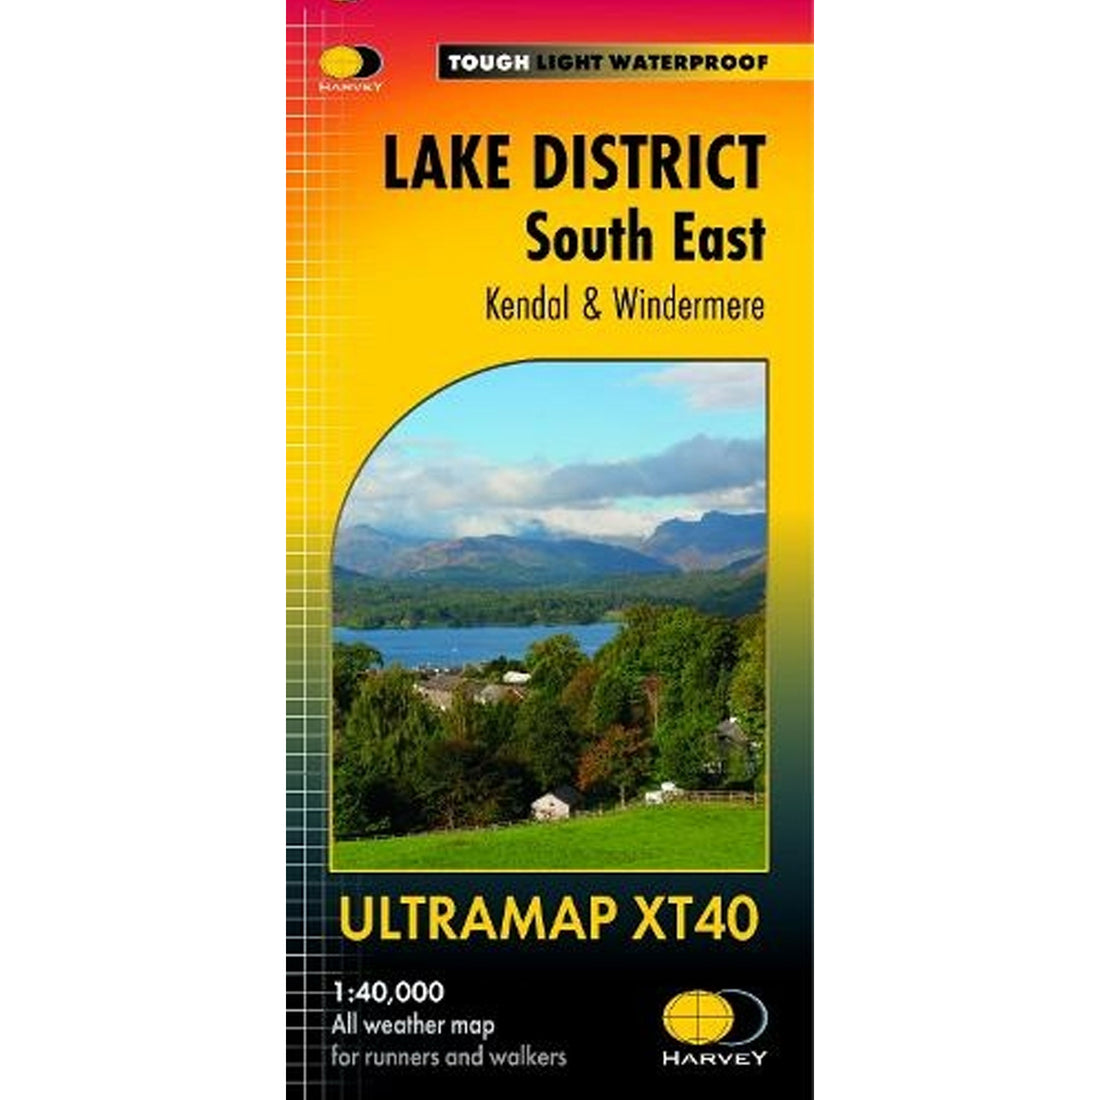 Ultramap Xt40 Map: Lake District South East